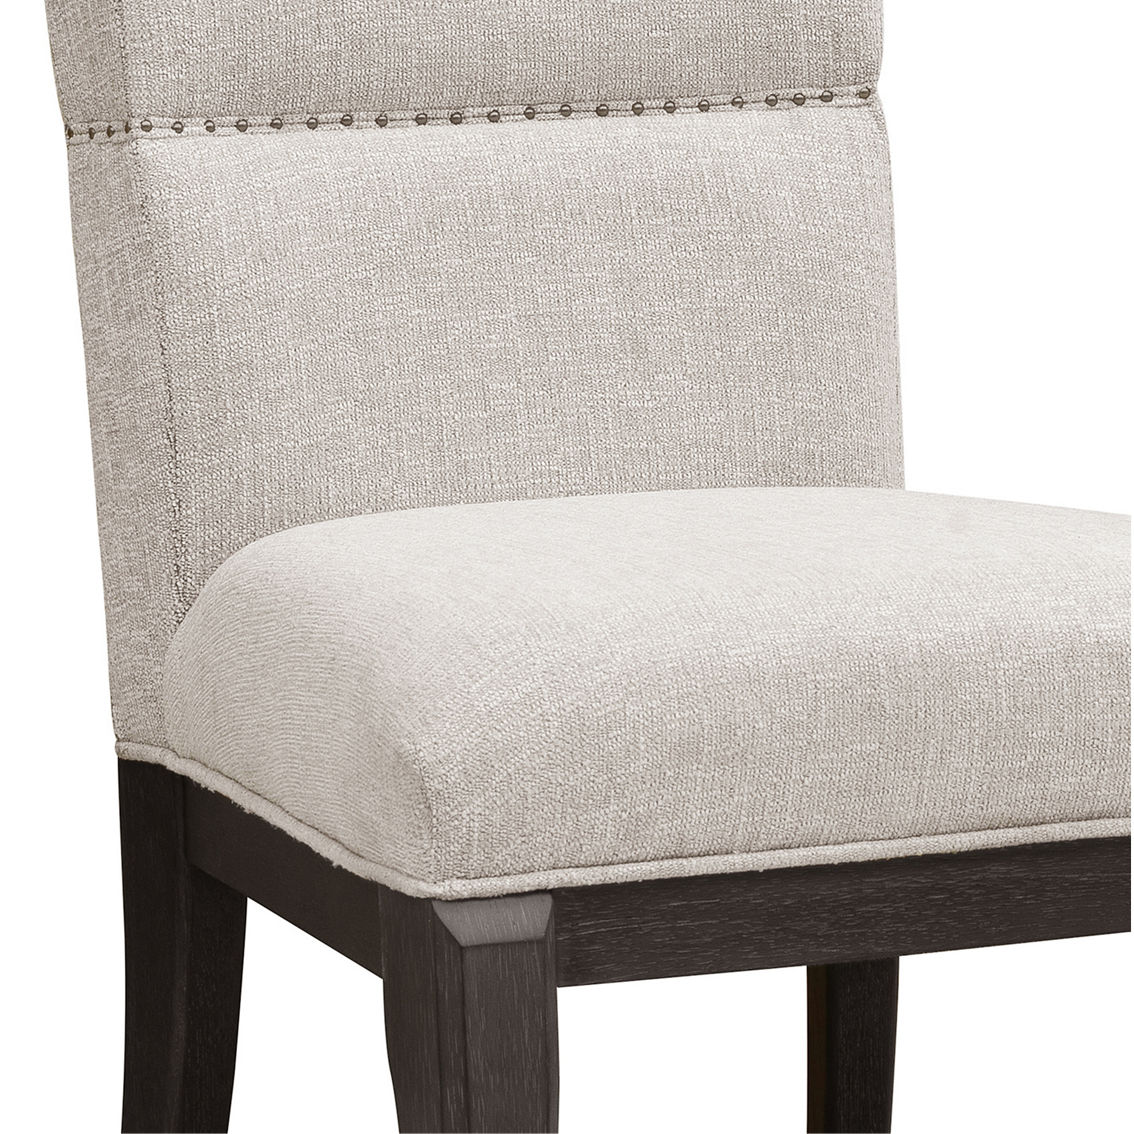 Pulaski Furniture West End Loft Upholstered Side Chair - Image 4 of 5